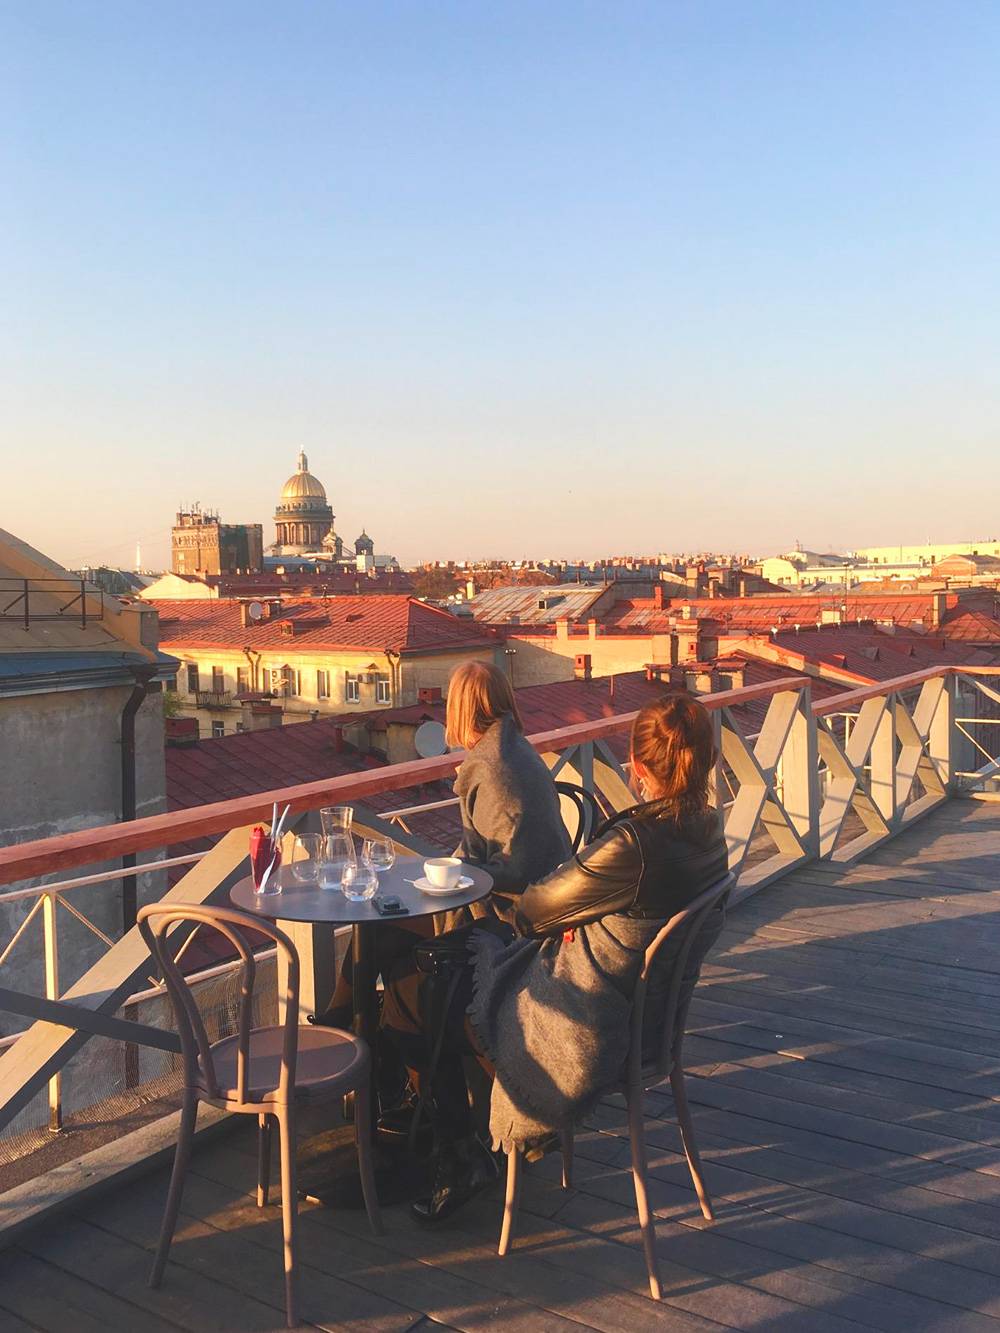 В центре города террасы на крыше с видом в основном принадлежат дорогим ресторанам и отелям, поэтому «Небо и вино» — ценный адрес